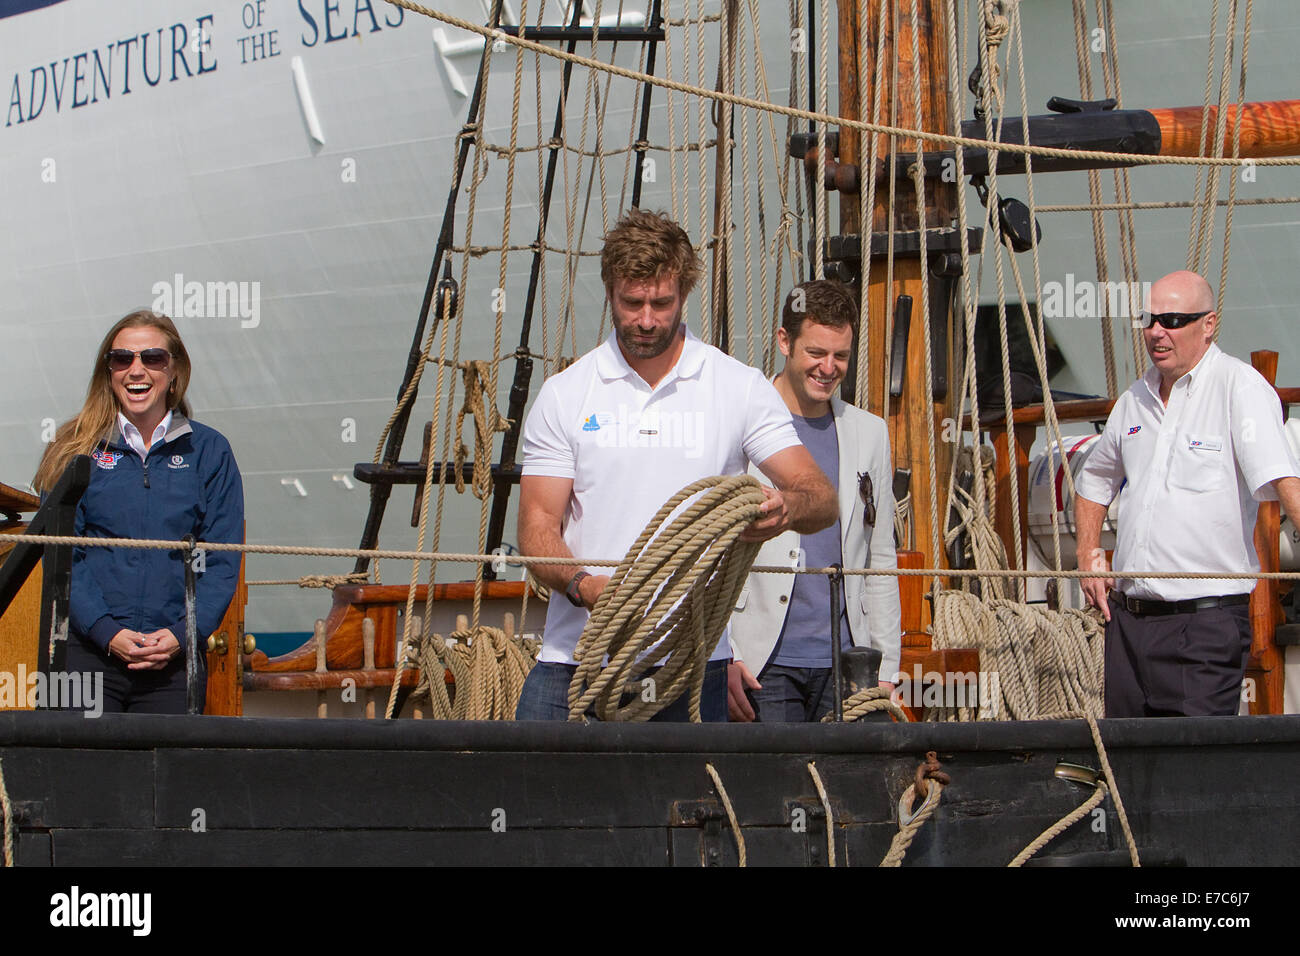 Joe Dixie Goodman, Iain Percy and Matt Baker at the Southampton boat show 2014 Stock Photo